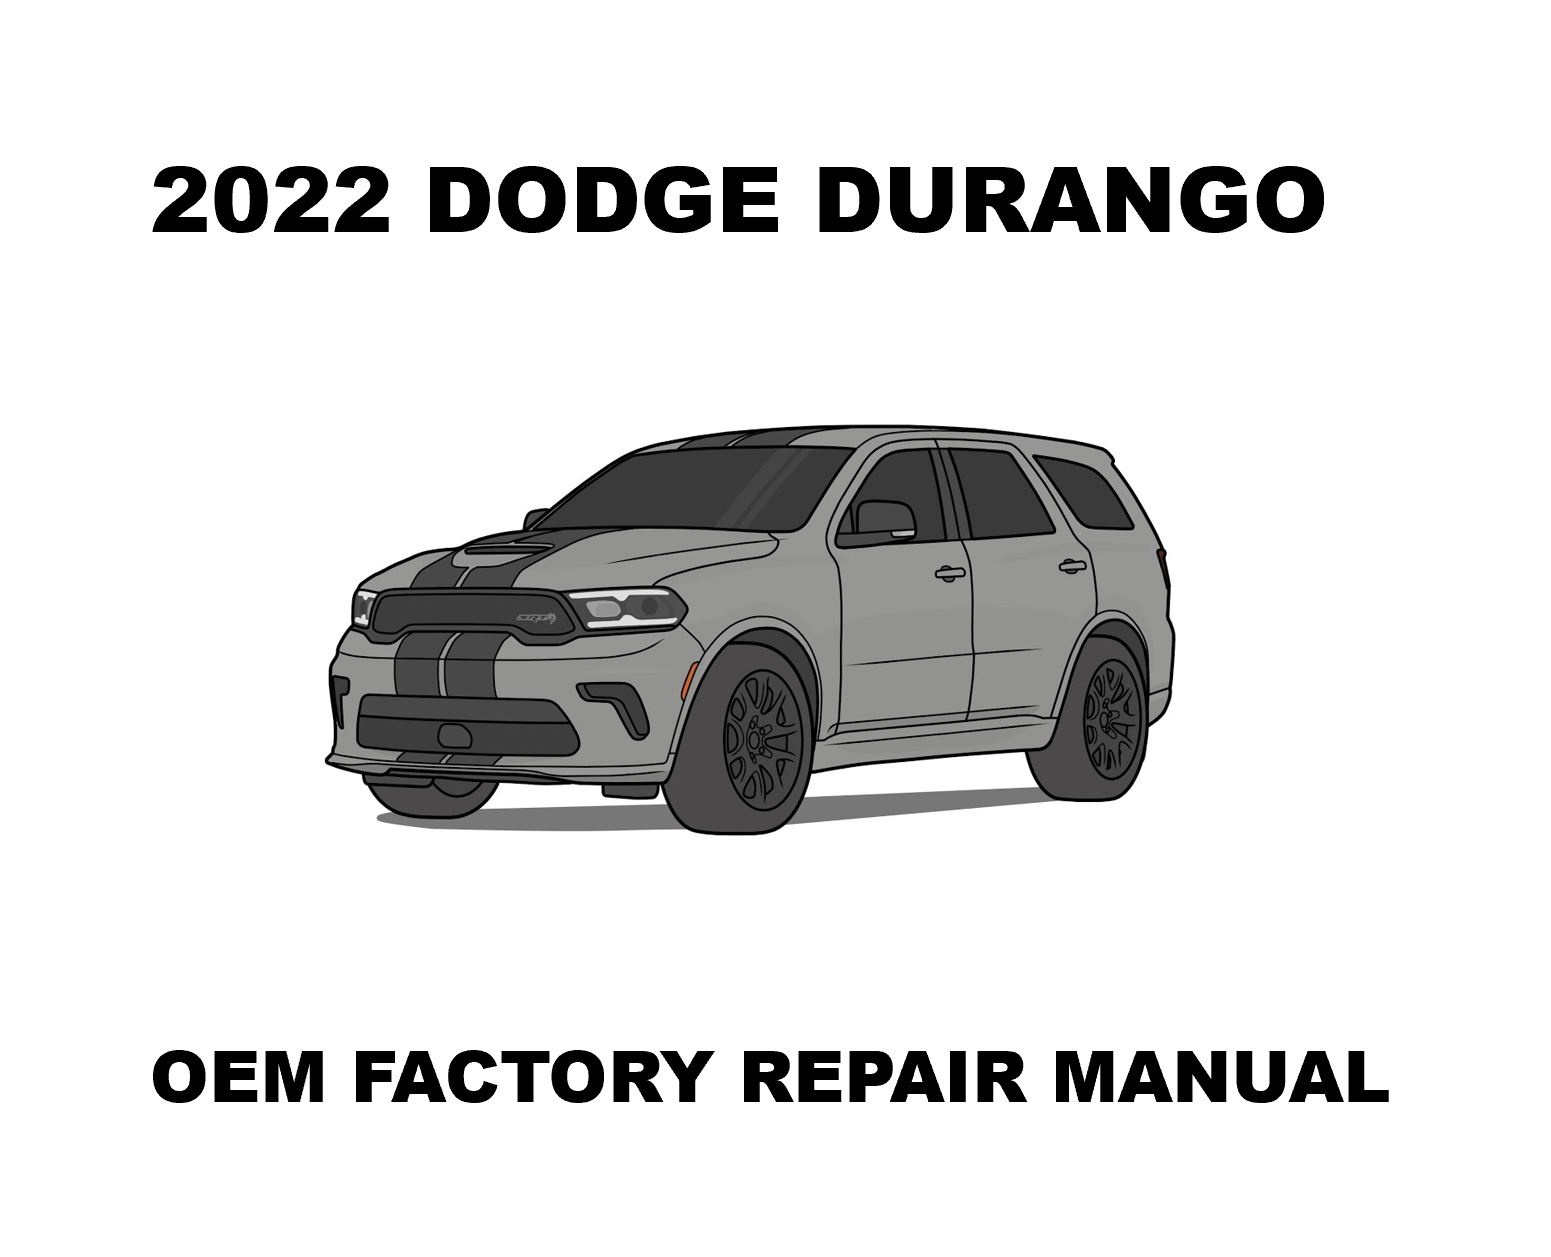 2022_dodge_durango_repair_manual_1551